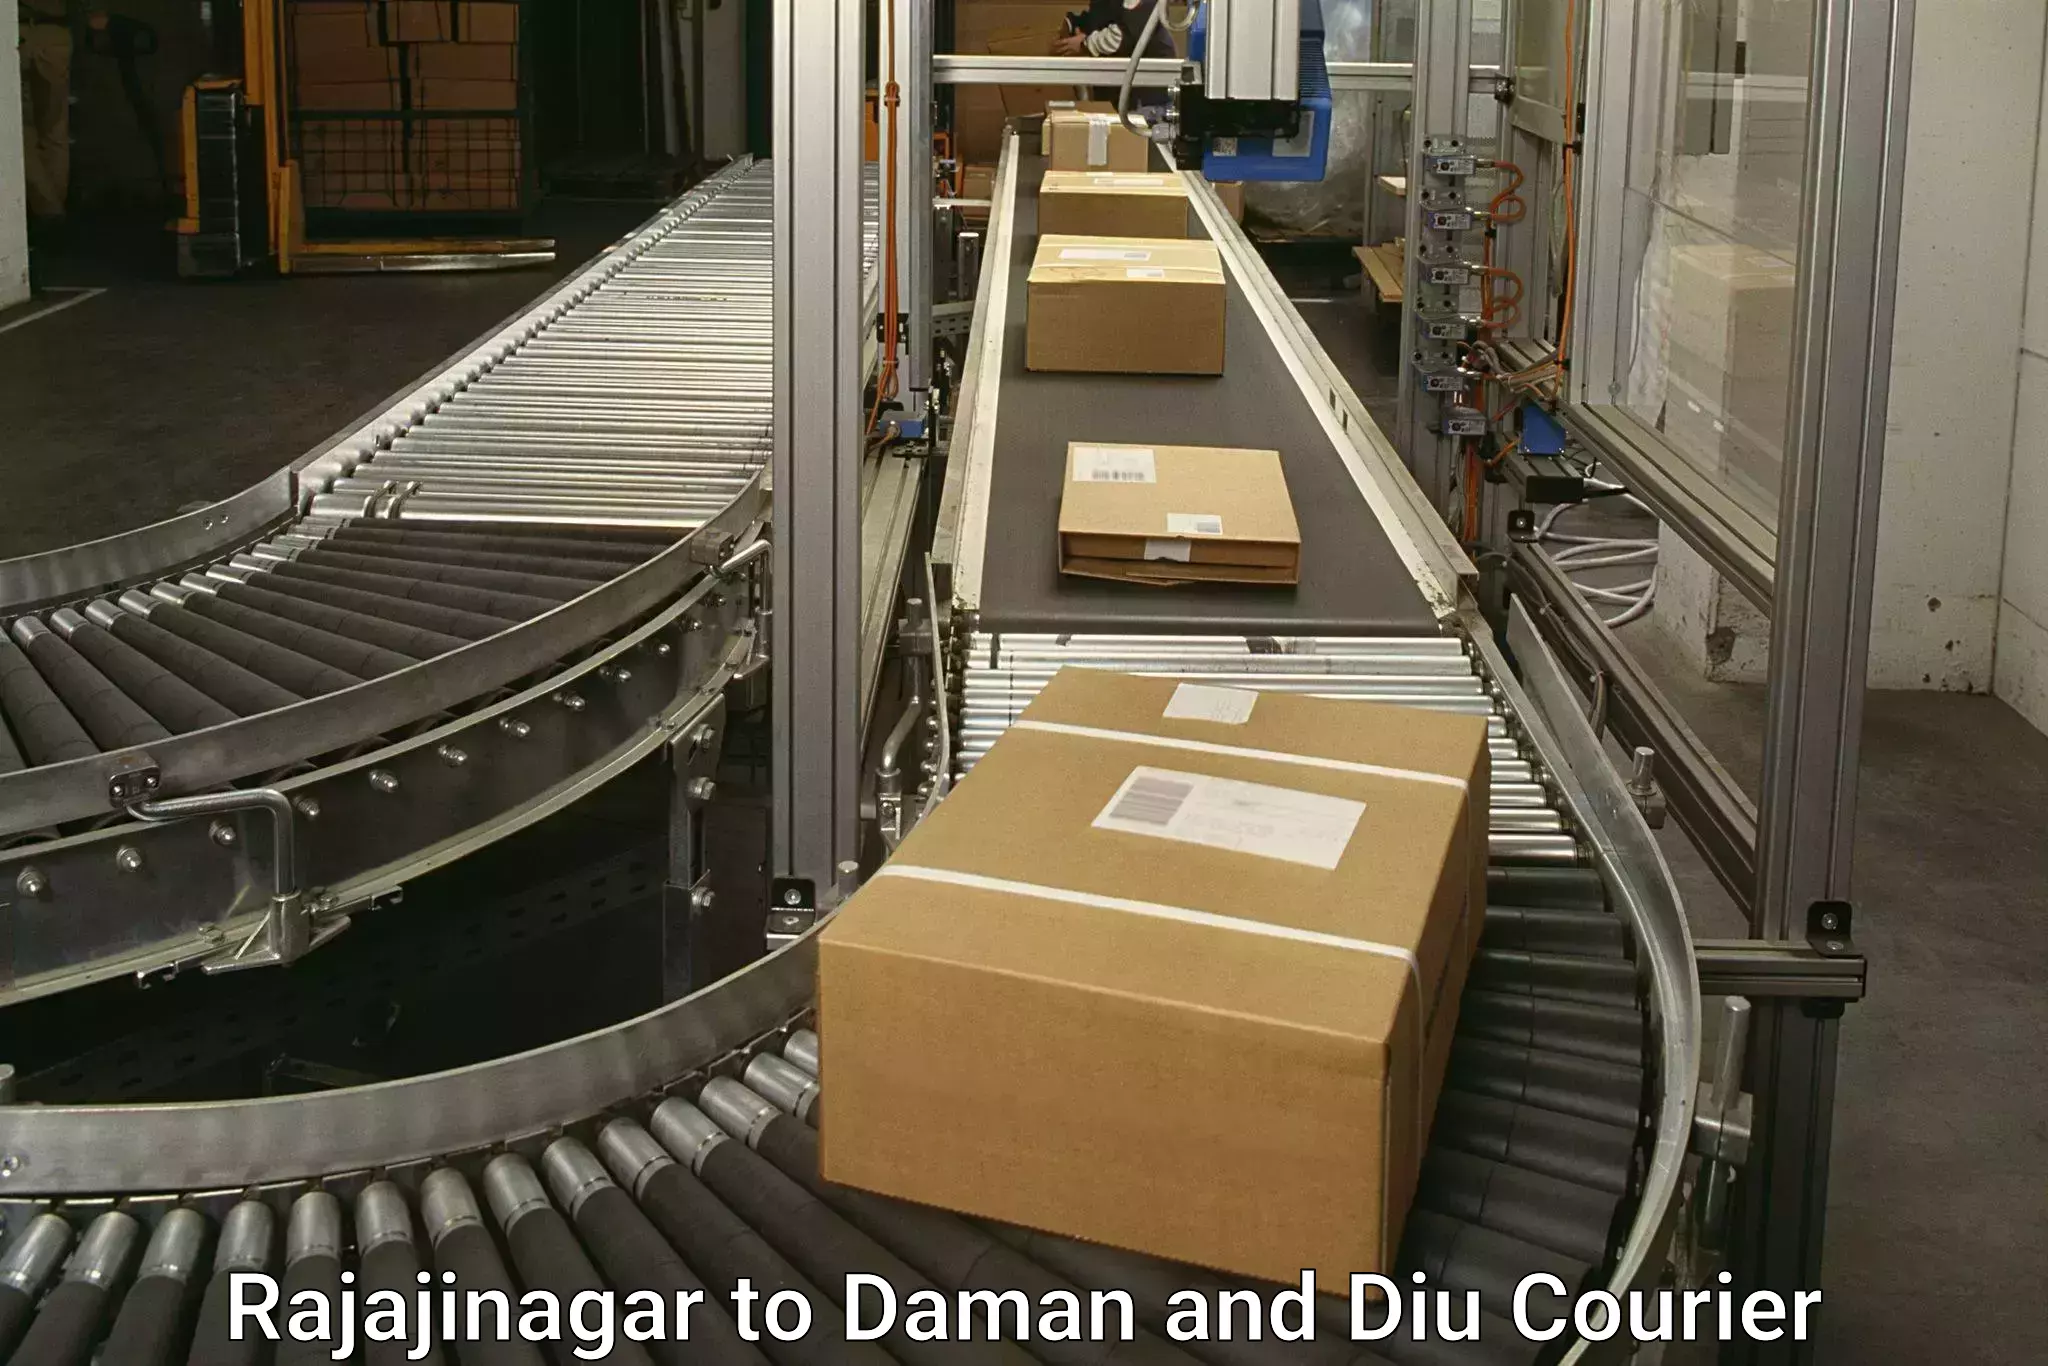 Next day courier Rajajinagar to Diu